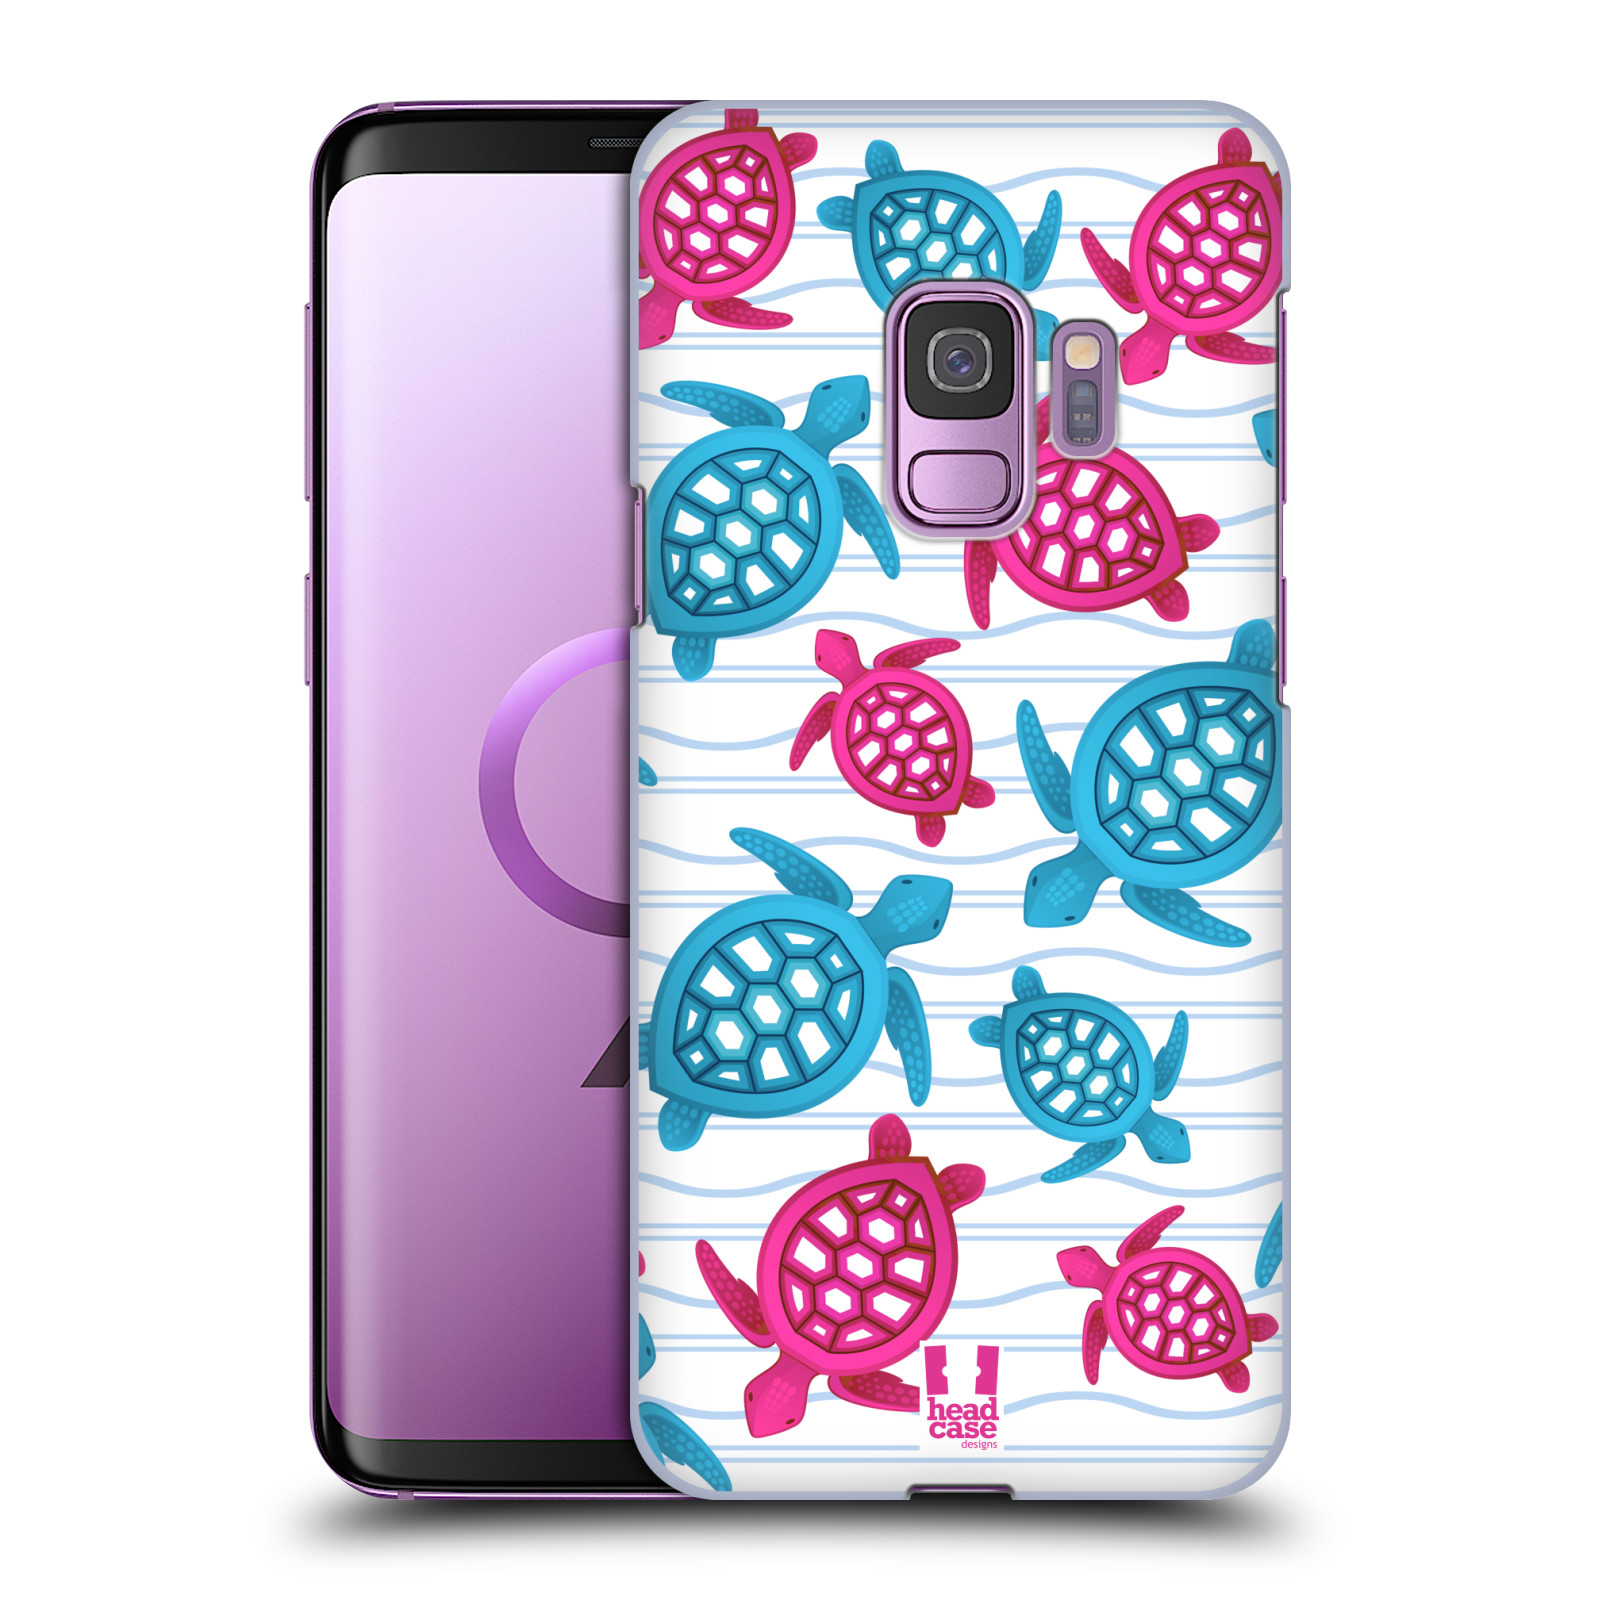 Zadní obal pro mobil Samsung Galaxy S9 - HEAD CASE - kreslený mořský vzor želvičky